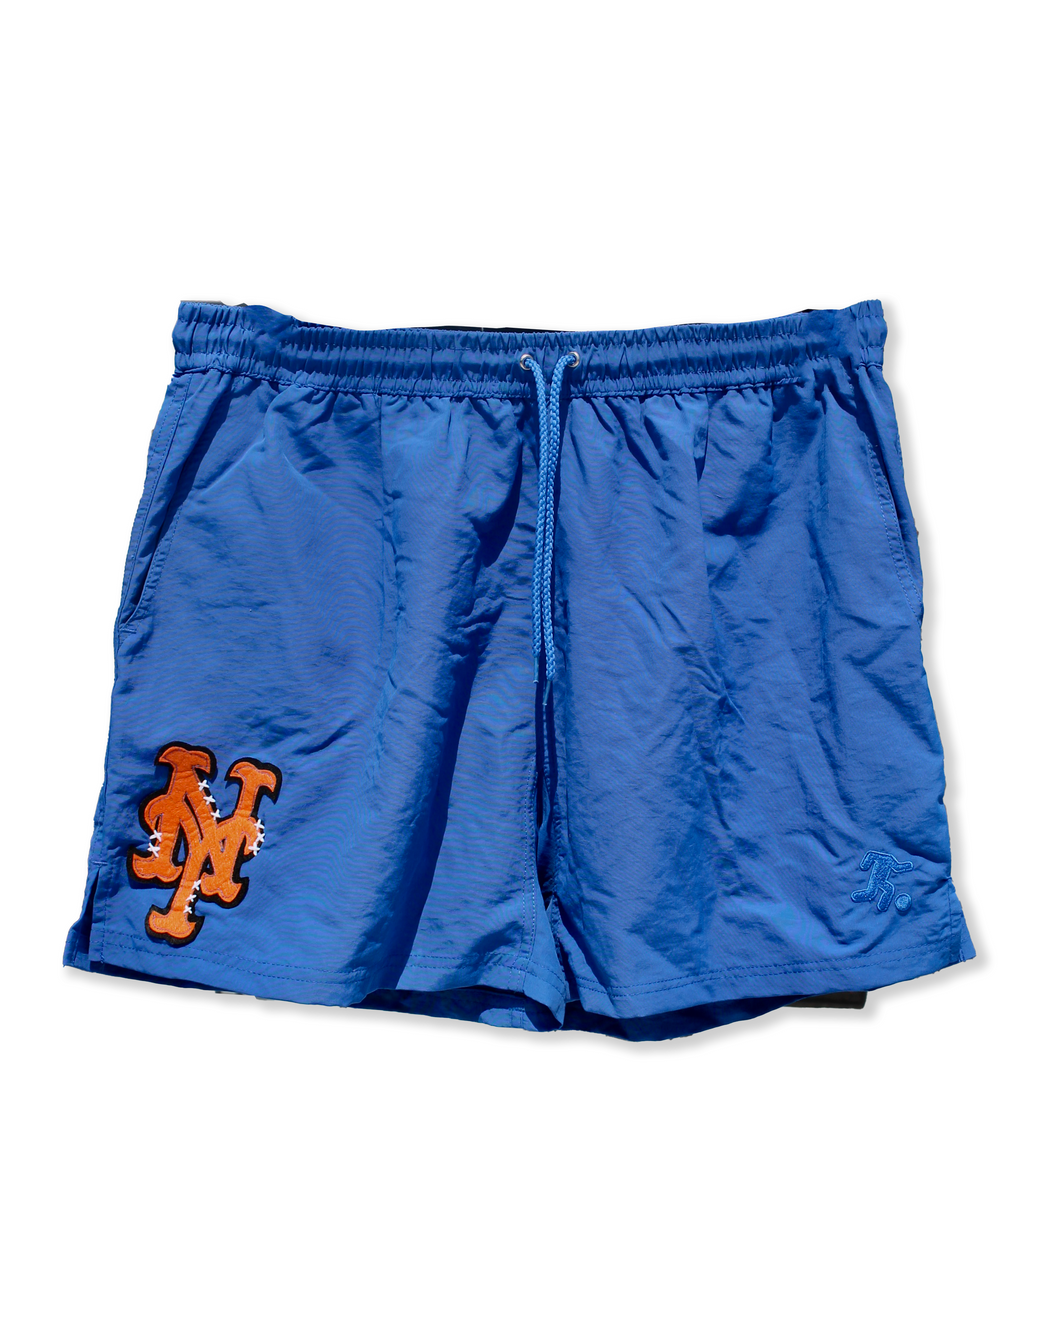 Scenes NY x SFC Blue Shorts with NY Mets Logo